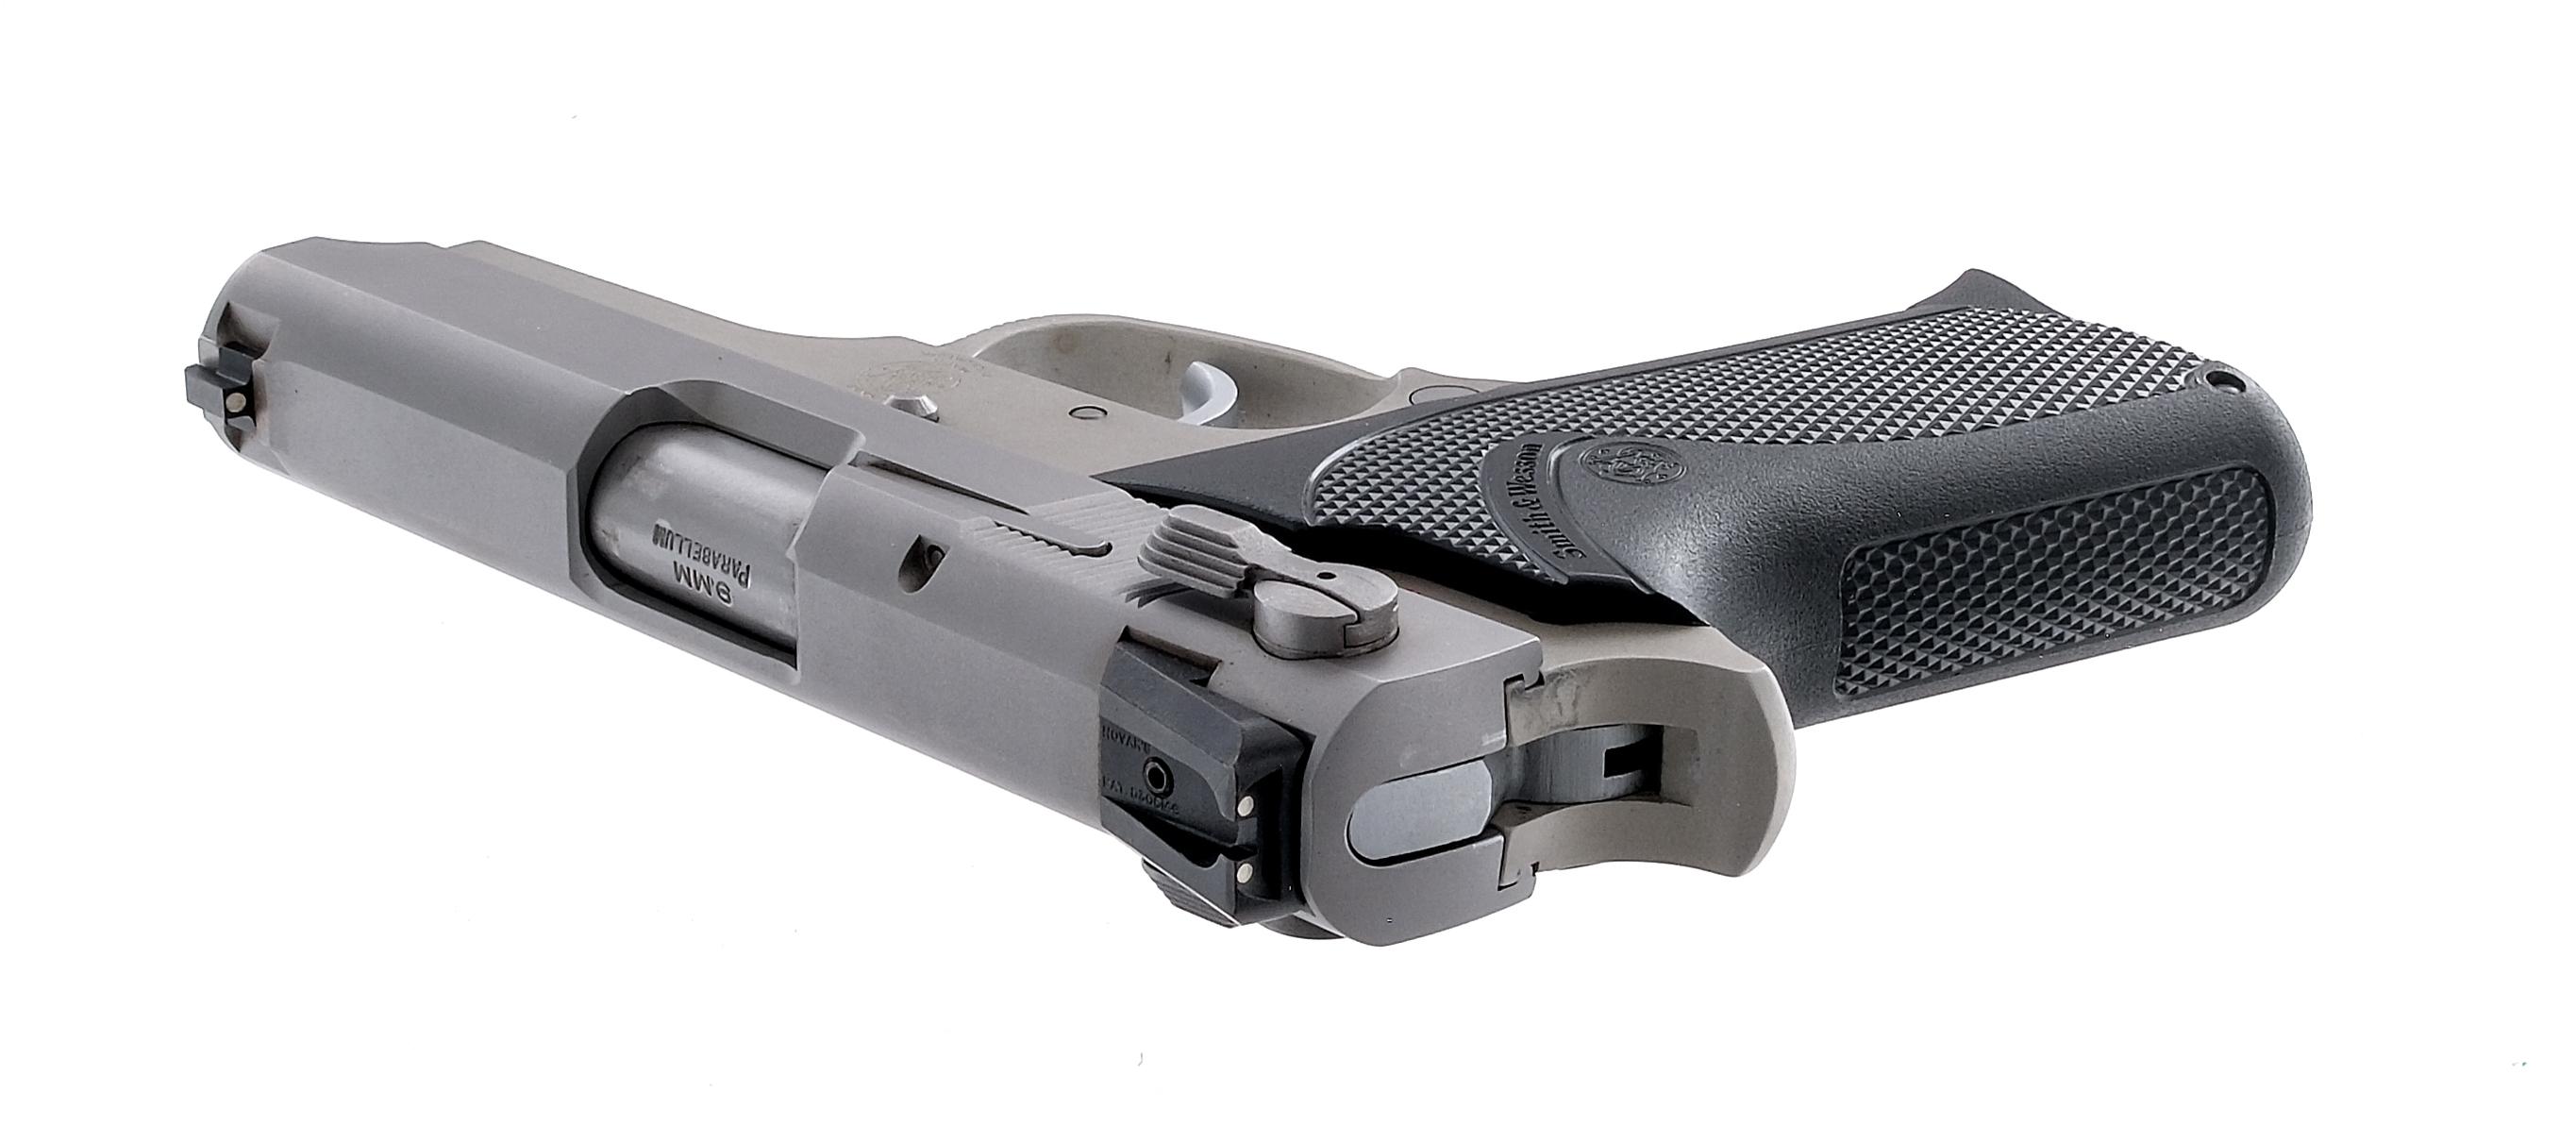 Smith & Wesson 3913 9mm Semi Auto Pistol